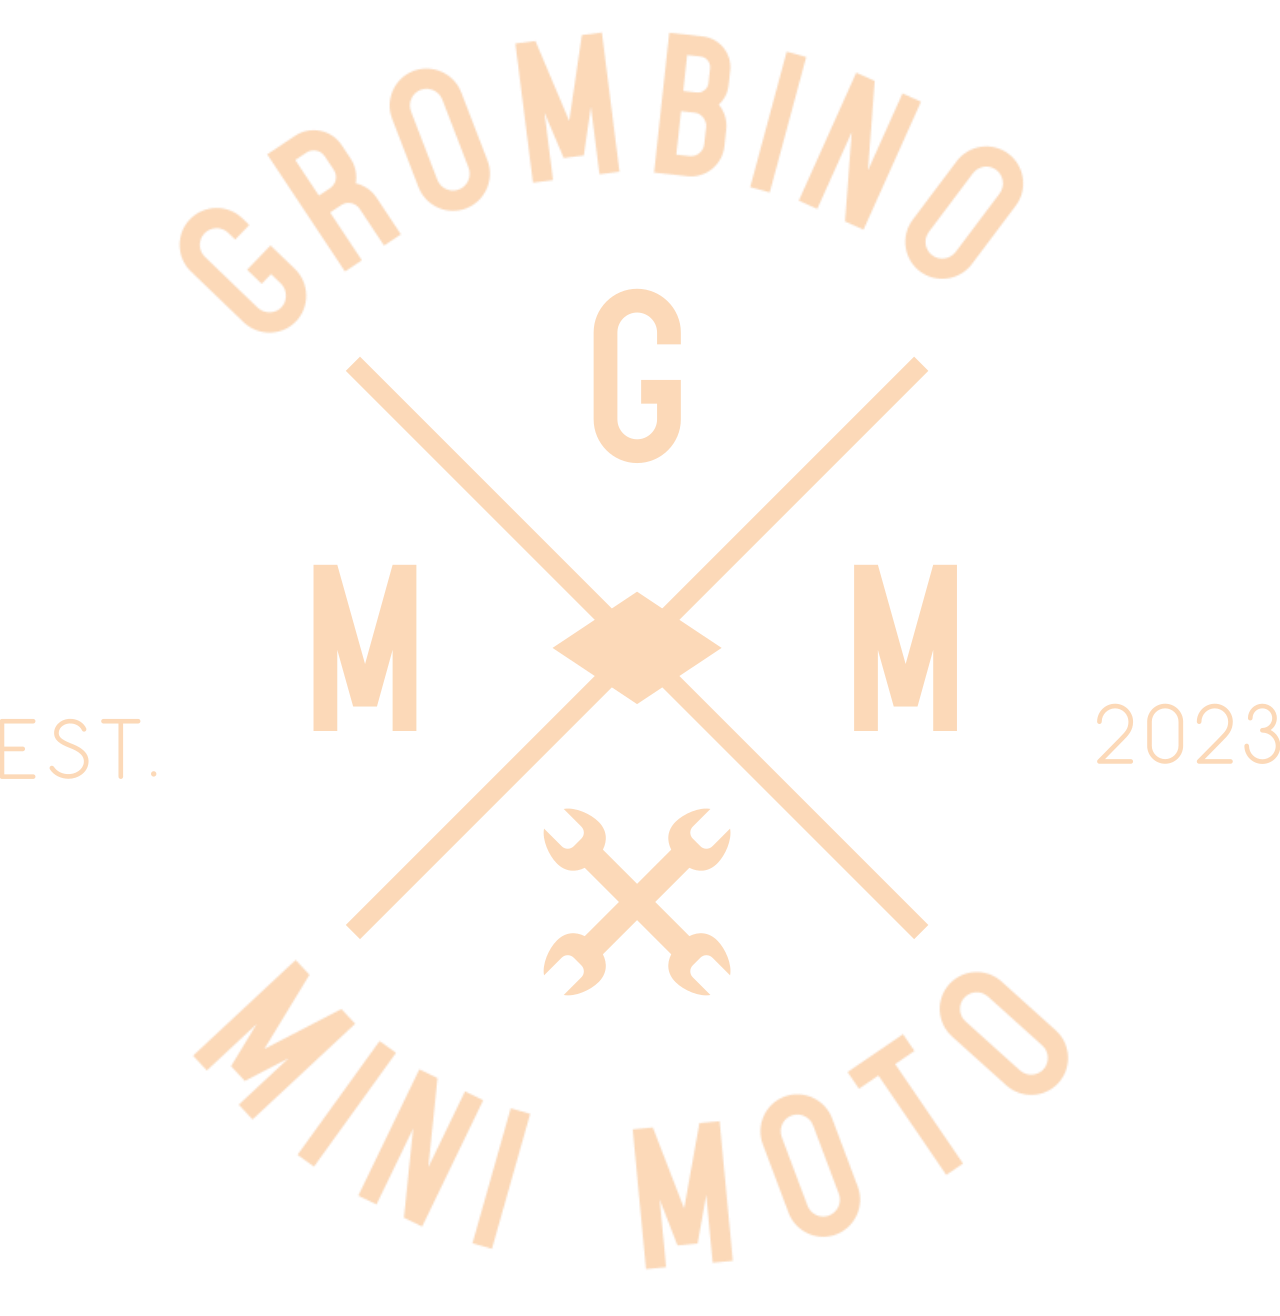 GROMBINO 's logo